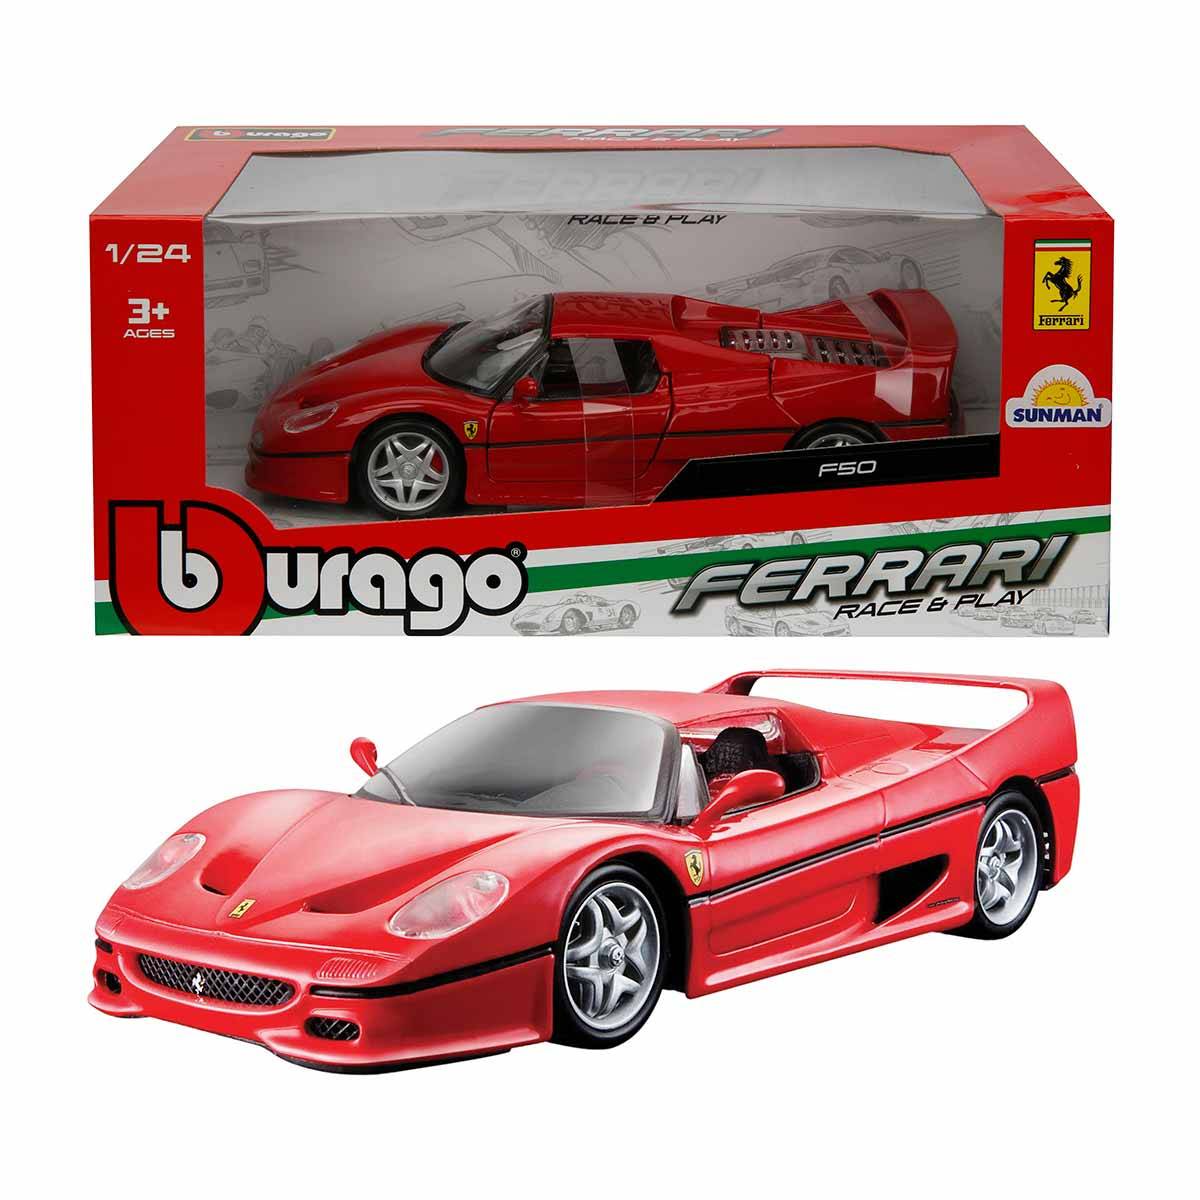 Burago 1/24 Ferrari F50 Model Araba